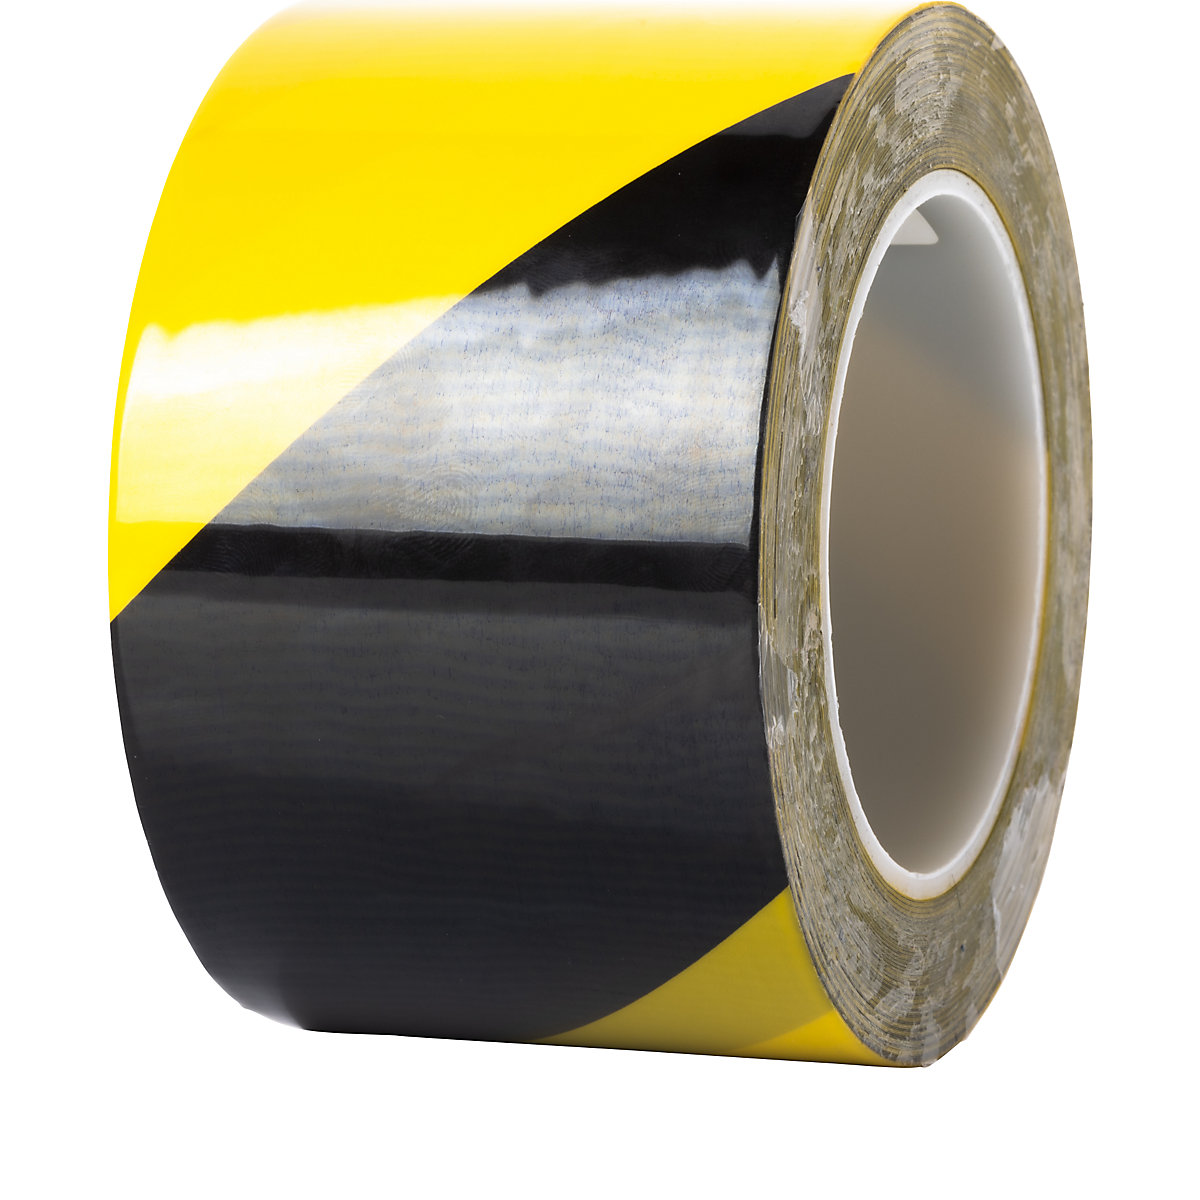 Vloermarkeringstape, extra sterk – Ampere, breedte 75 mm, dikte 0,2 mm, geel/zwart-2